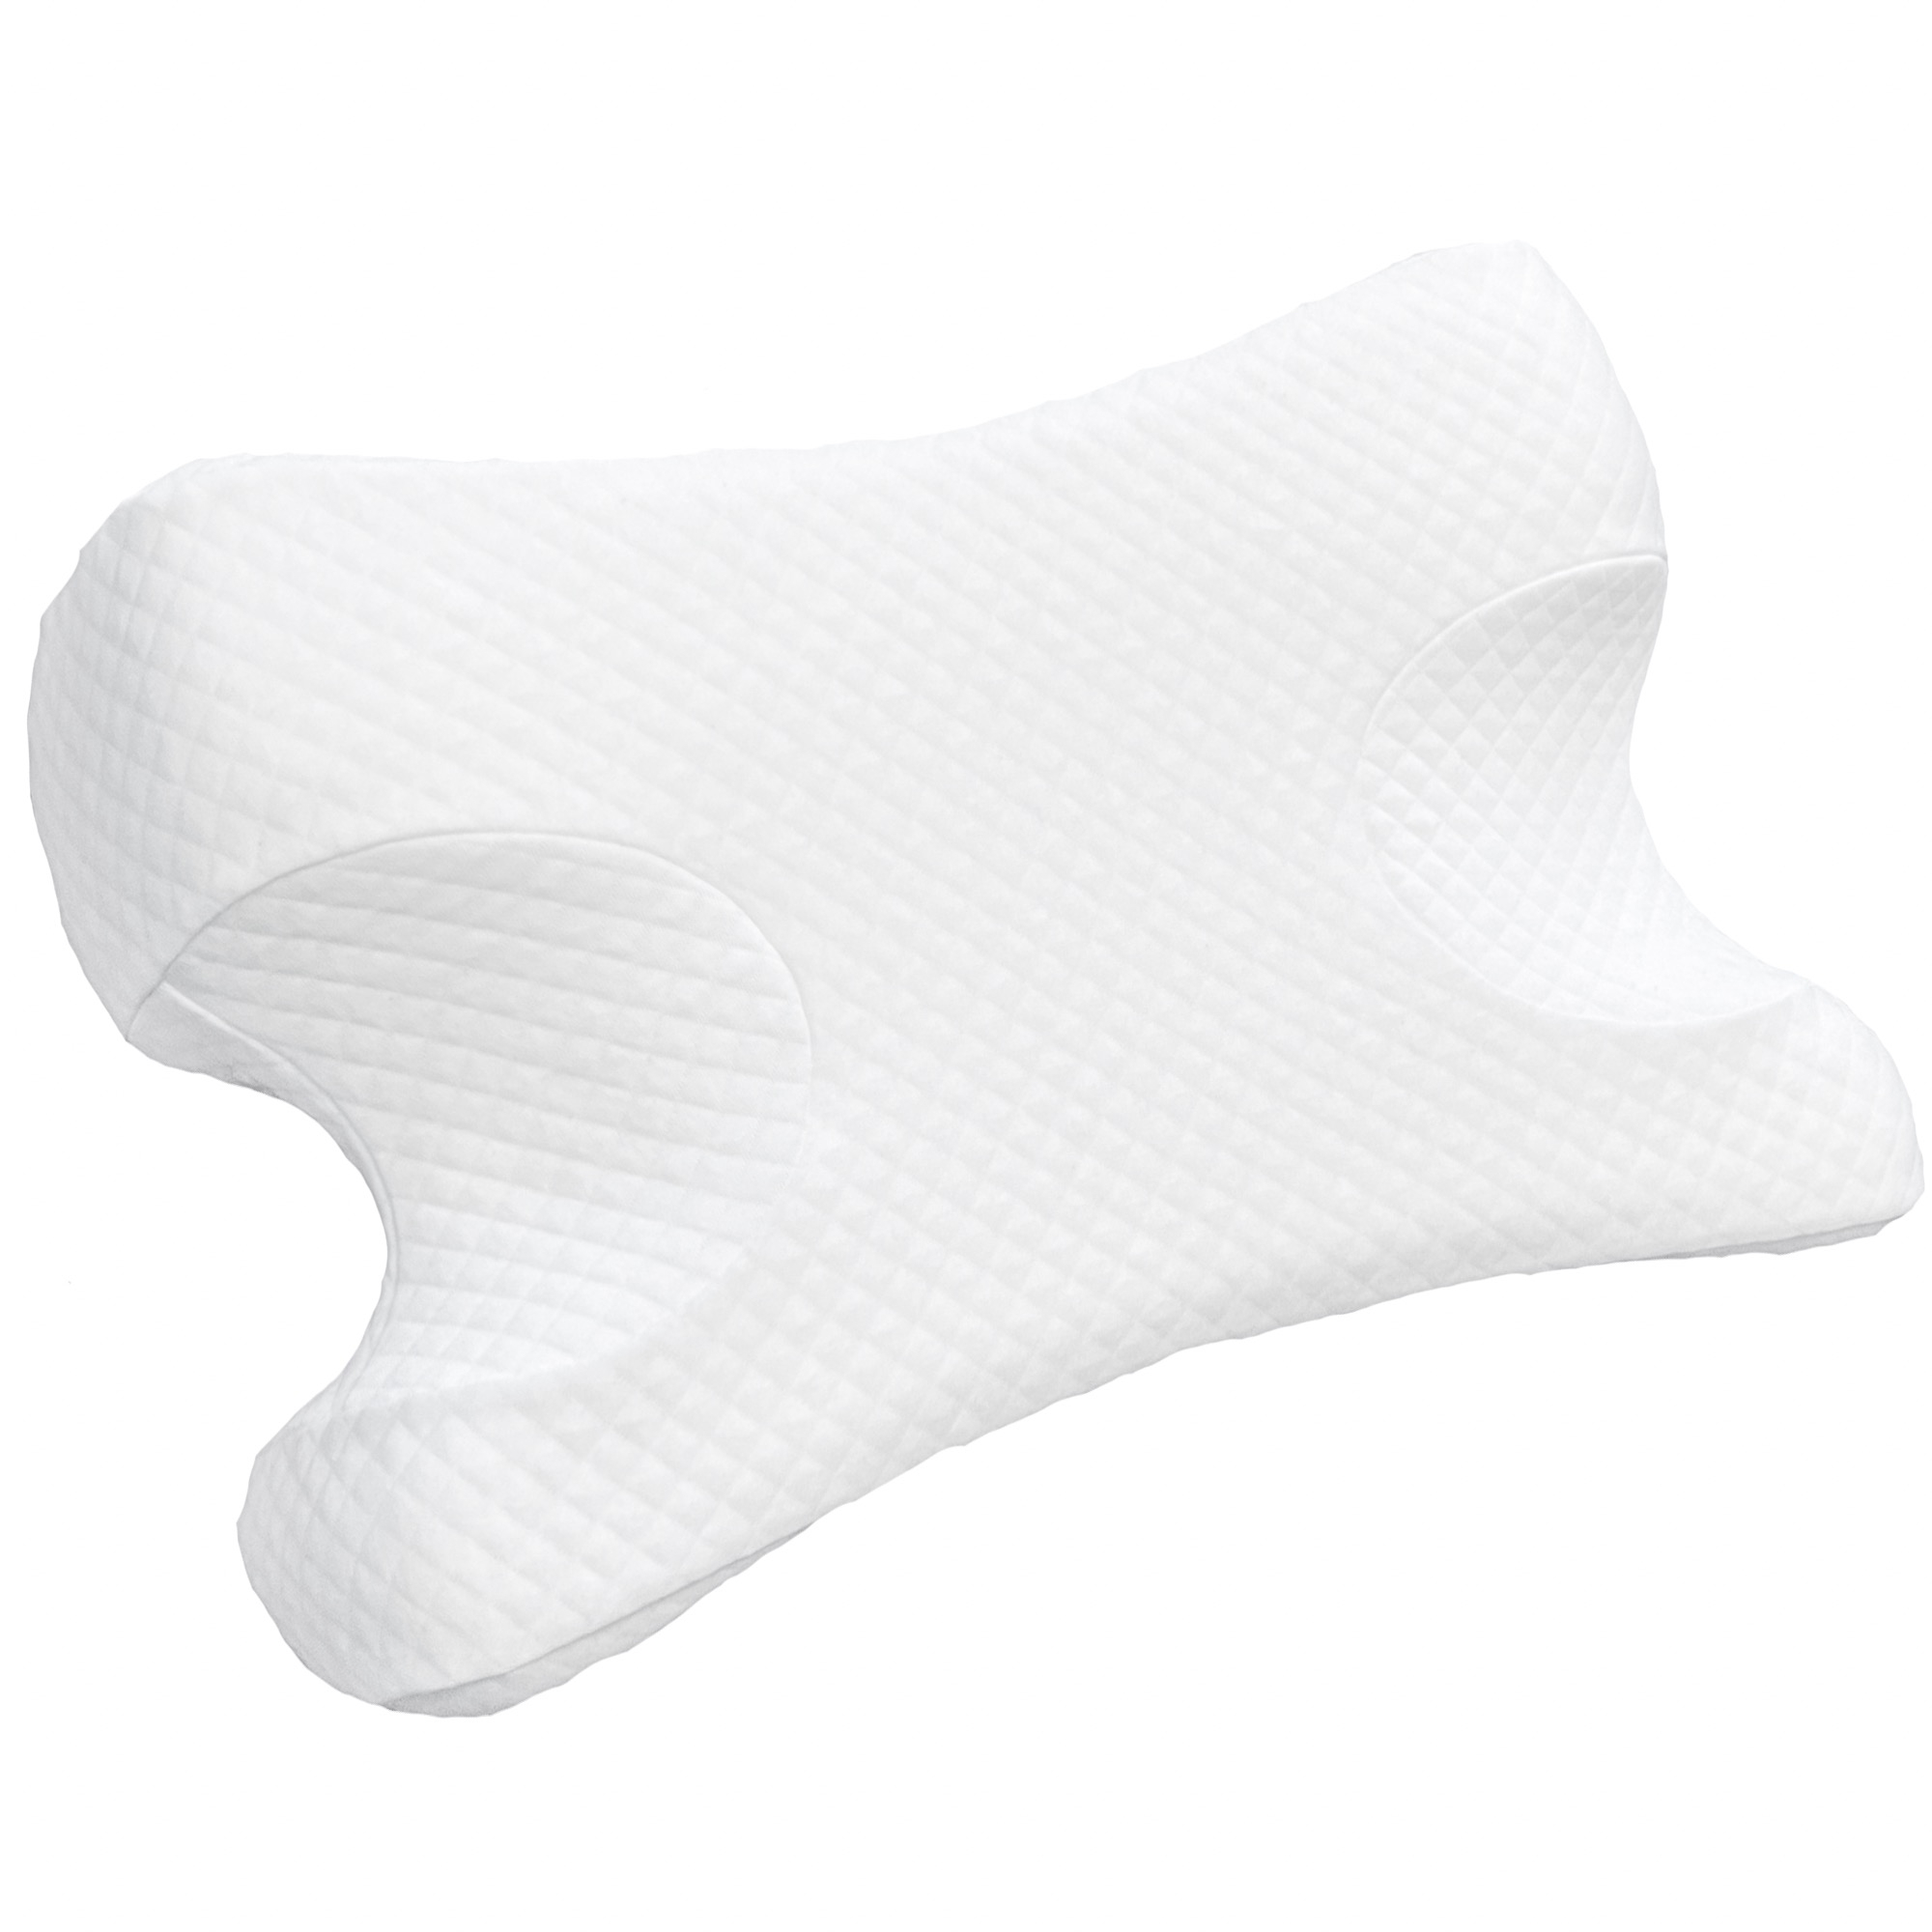 фото Анатомическая подушка против морщин с эффектом памяти skydreams высота 13 см, цвет белый